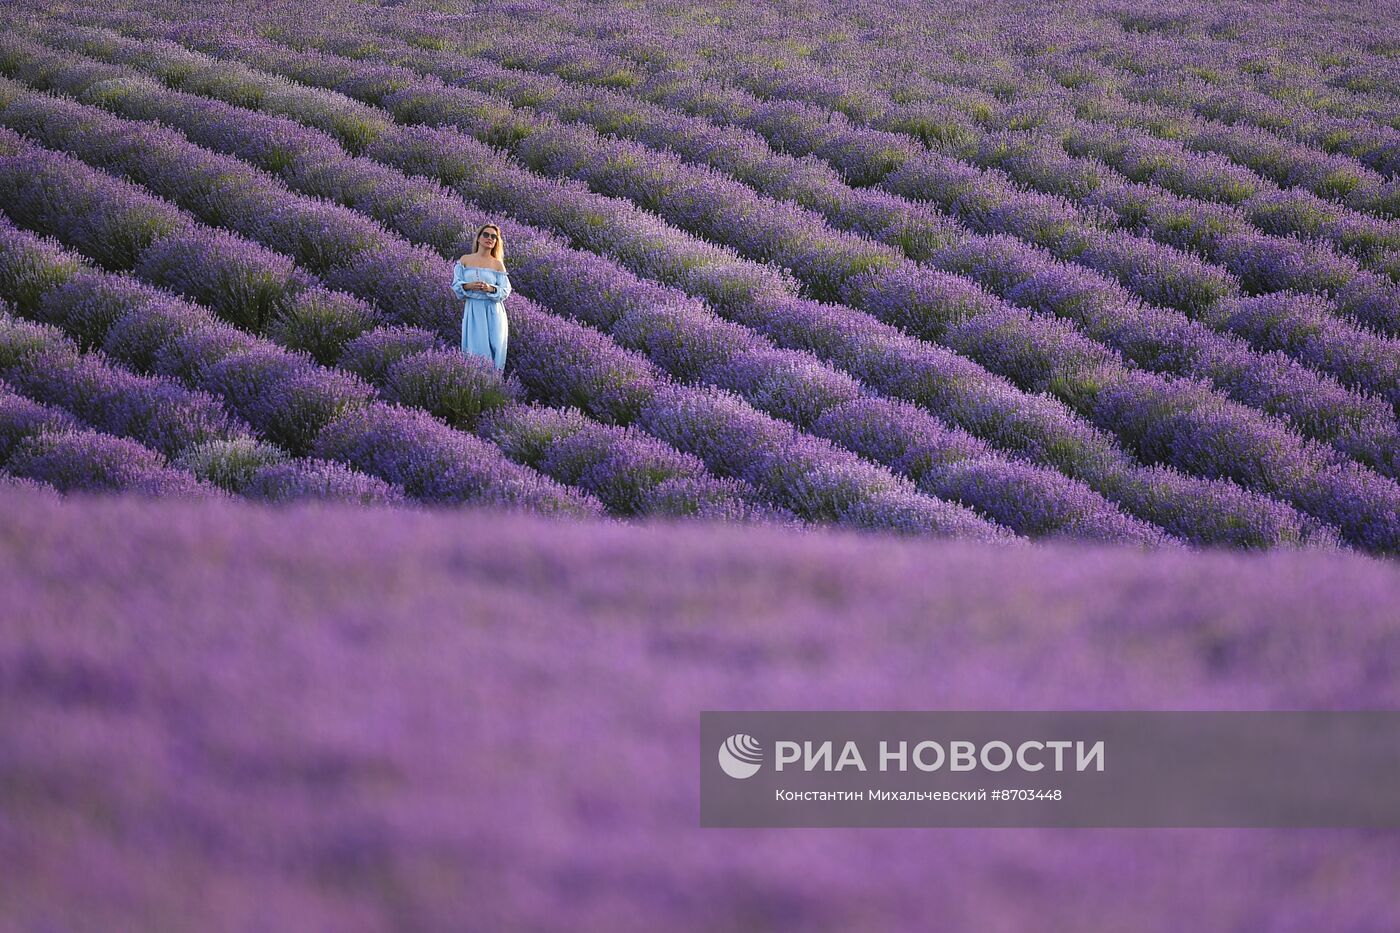 Лавандовые поля в Крыму